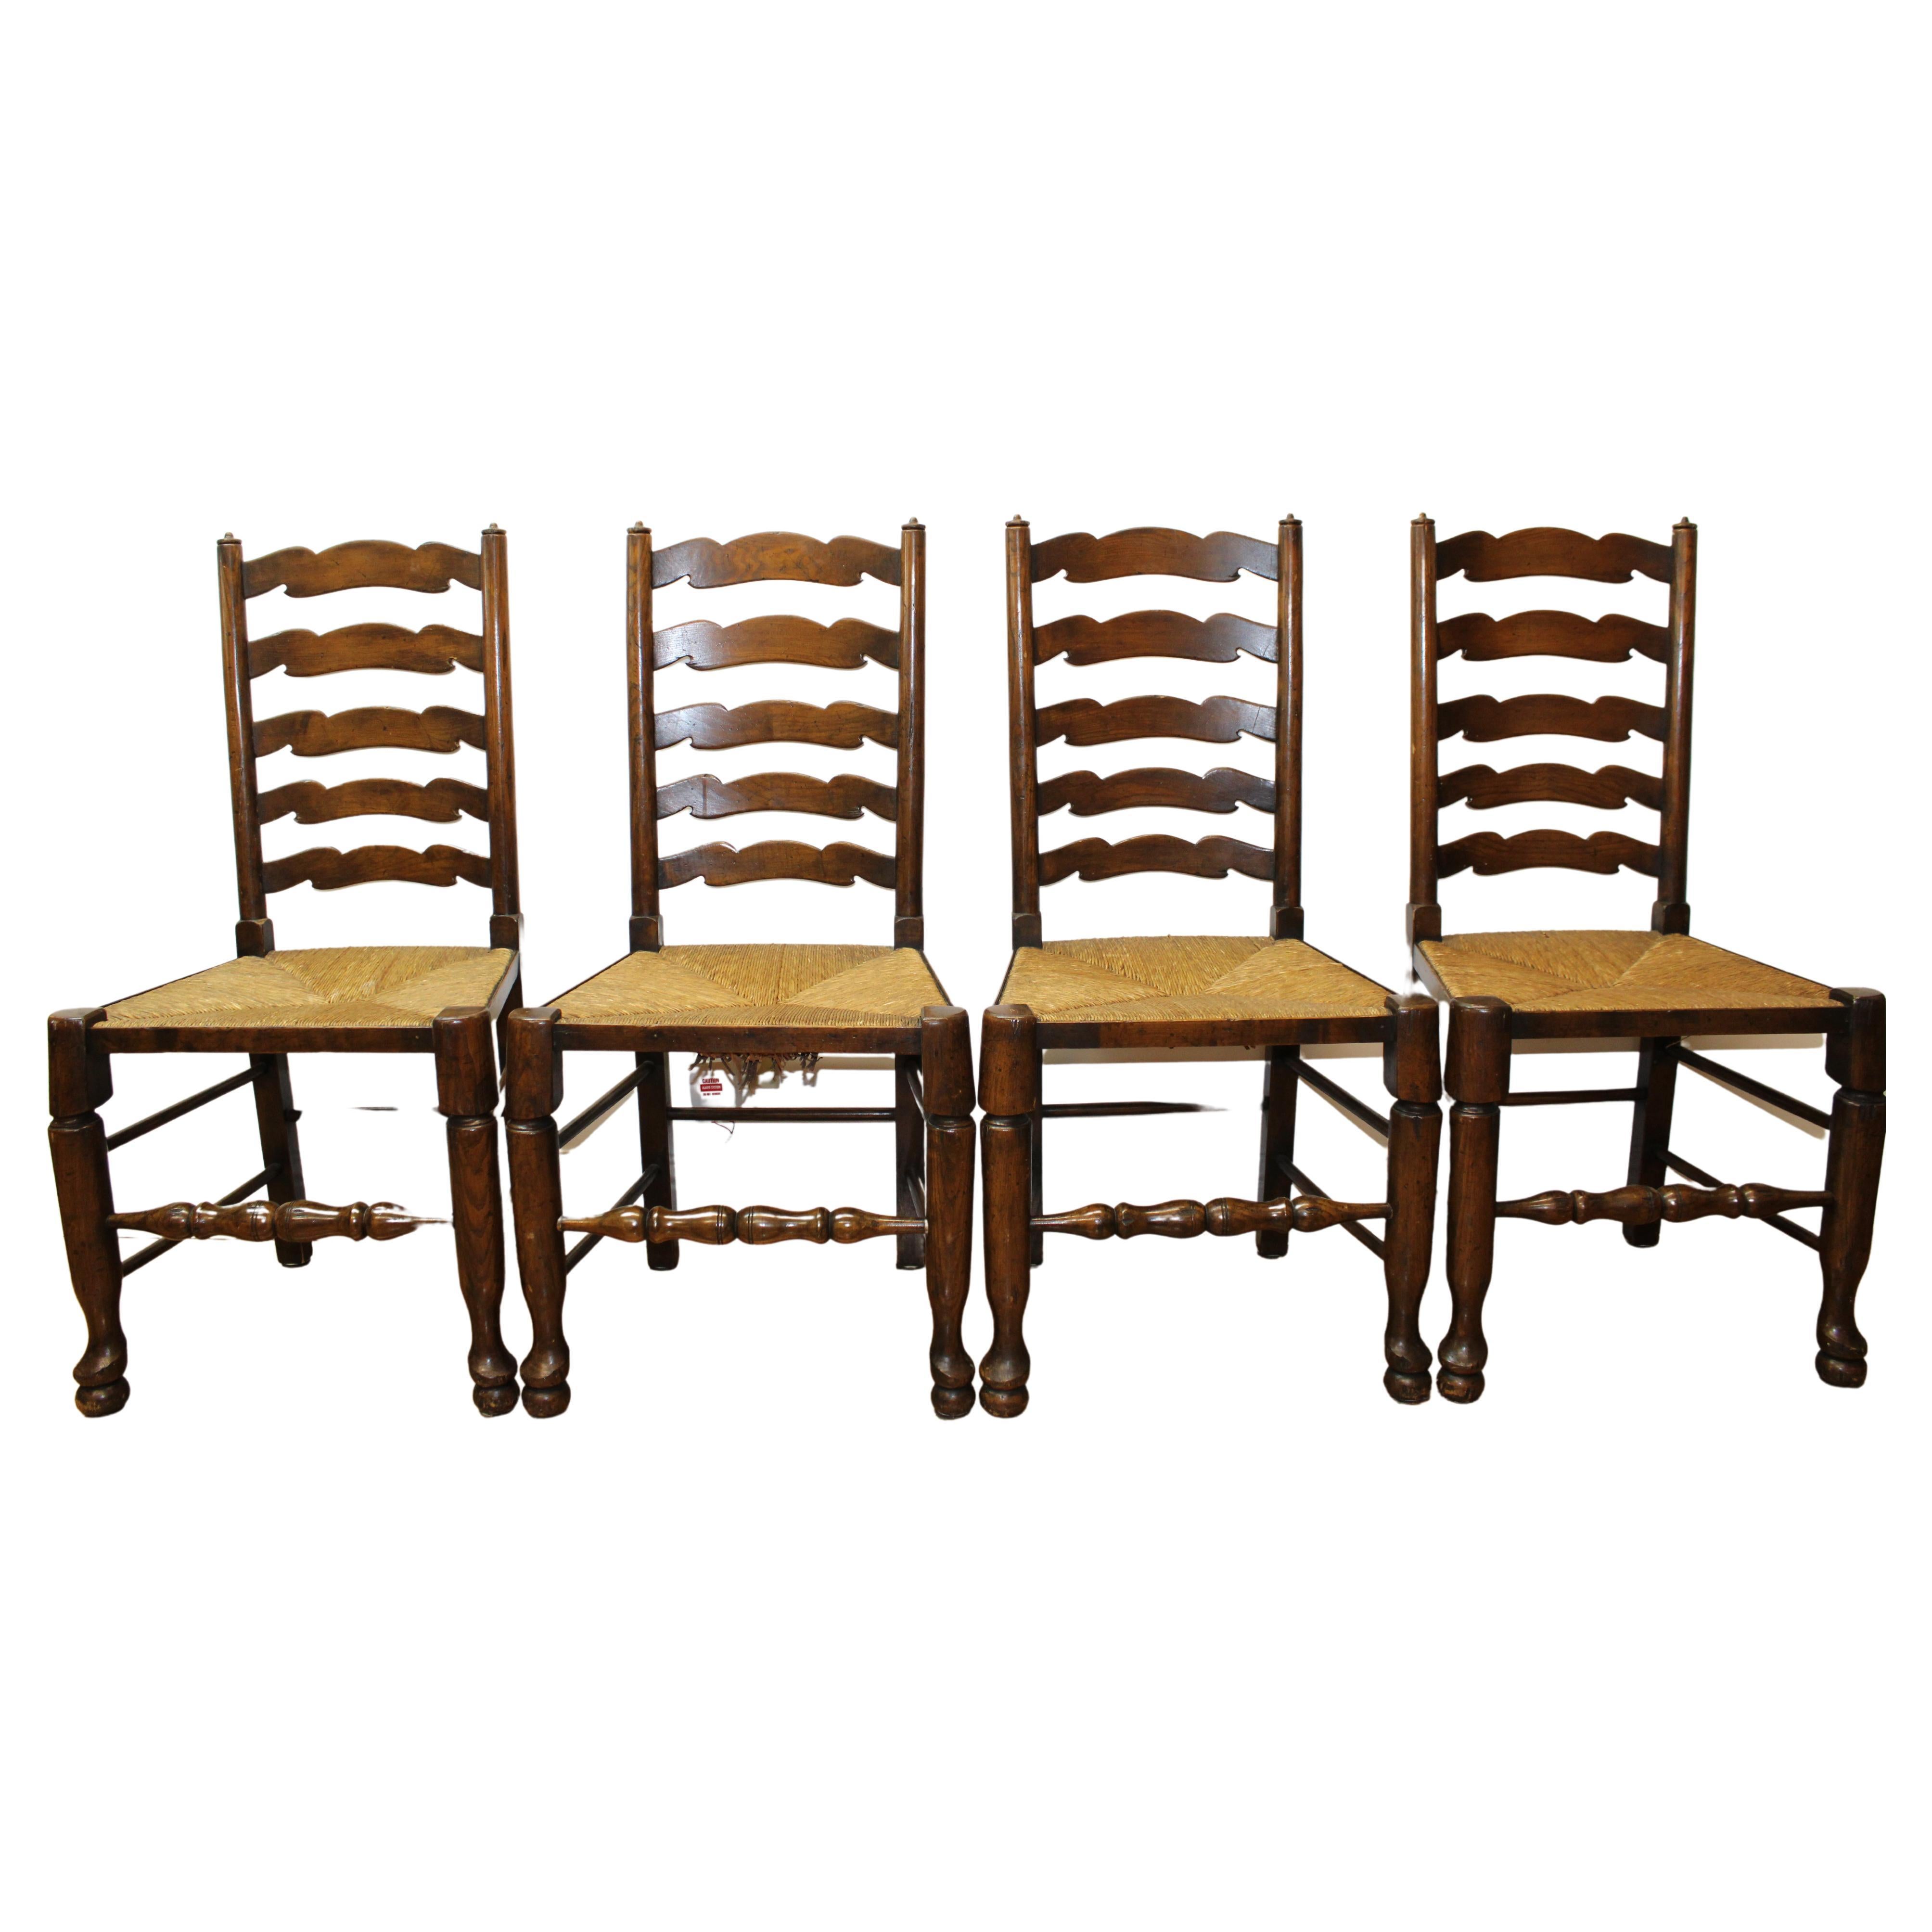 Europäische Wood Ladderback Stühle mit geflochtenen Sitzen